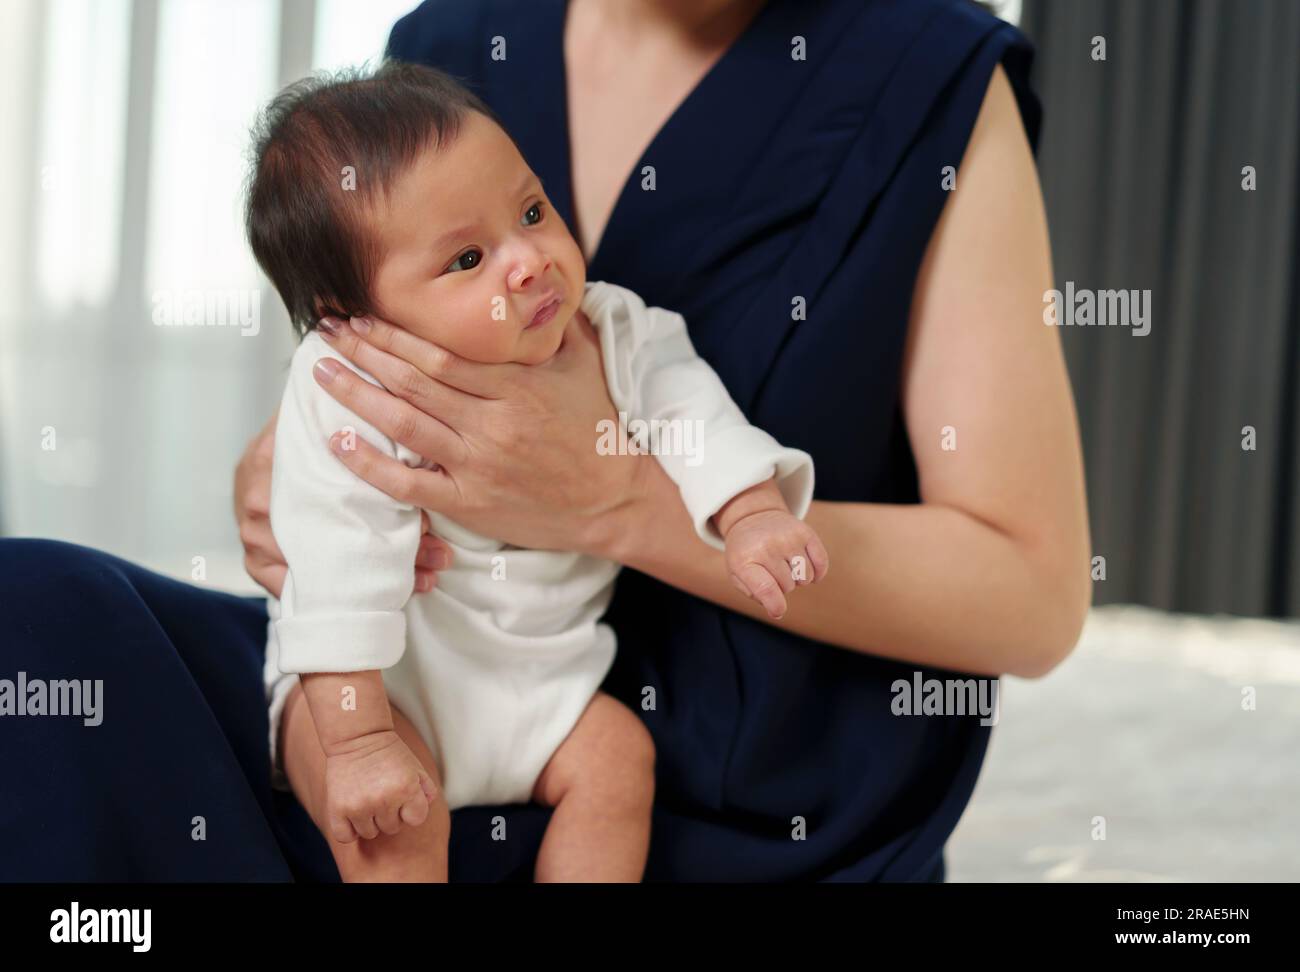 Mutter, die ein Neugeborenes hält und nach der Milchfütterung im Schlafzimmer aufstößt Stockfoto